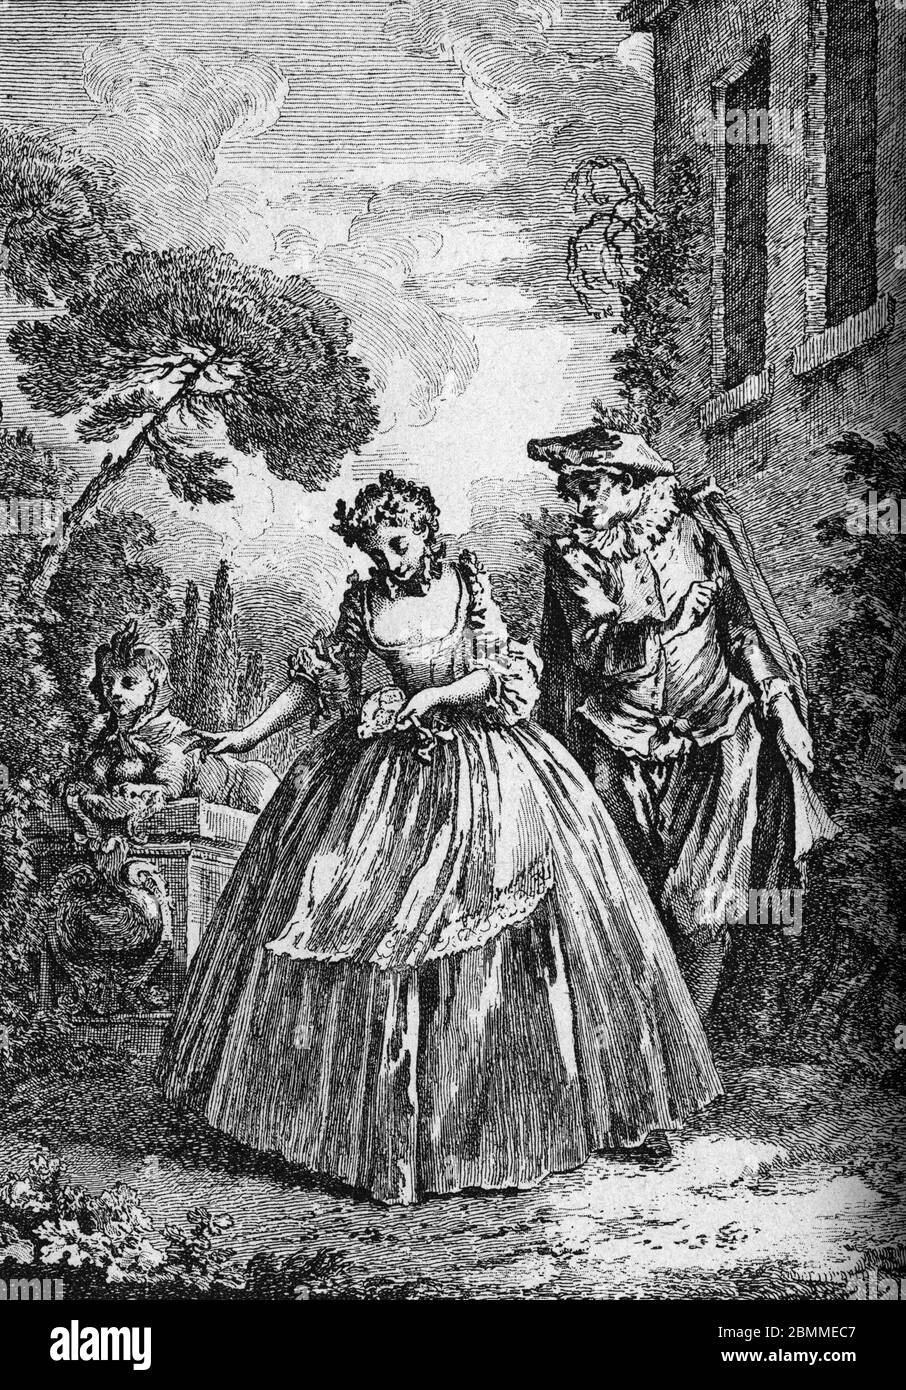 'Sganarelle' Illustration de Francois Boucher tiree de 'Oeuvres' de Jean-Baptiste Poquelin dit Moliere (Jean Baptiste Poquelin, 1622-1673), dramaturge Stock Photo